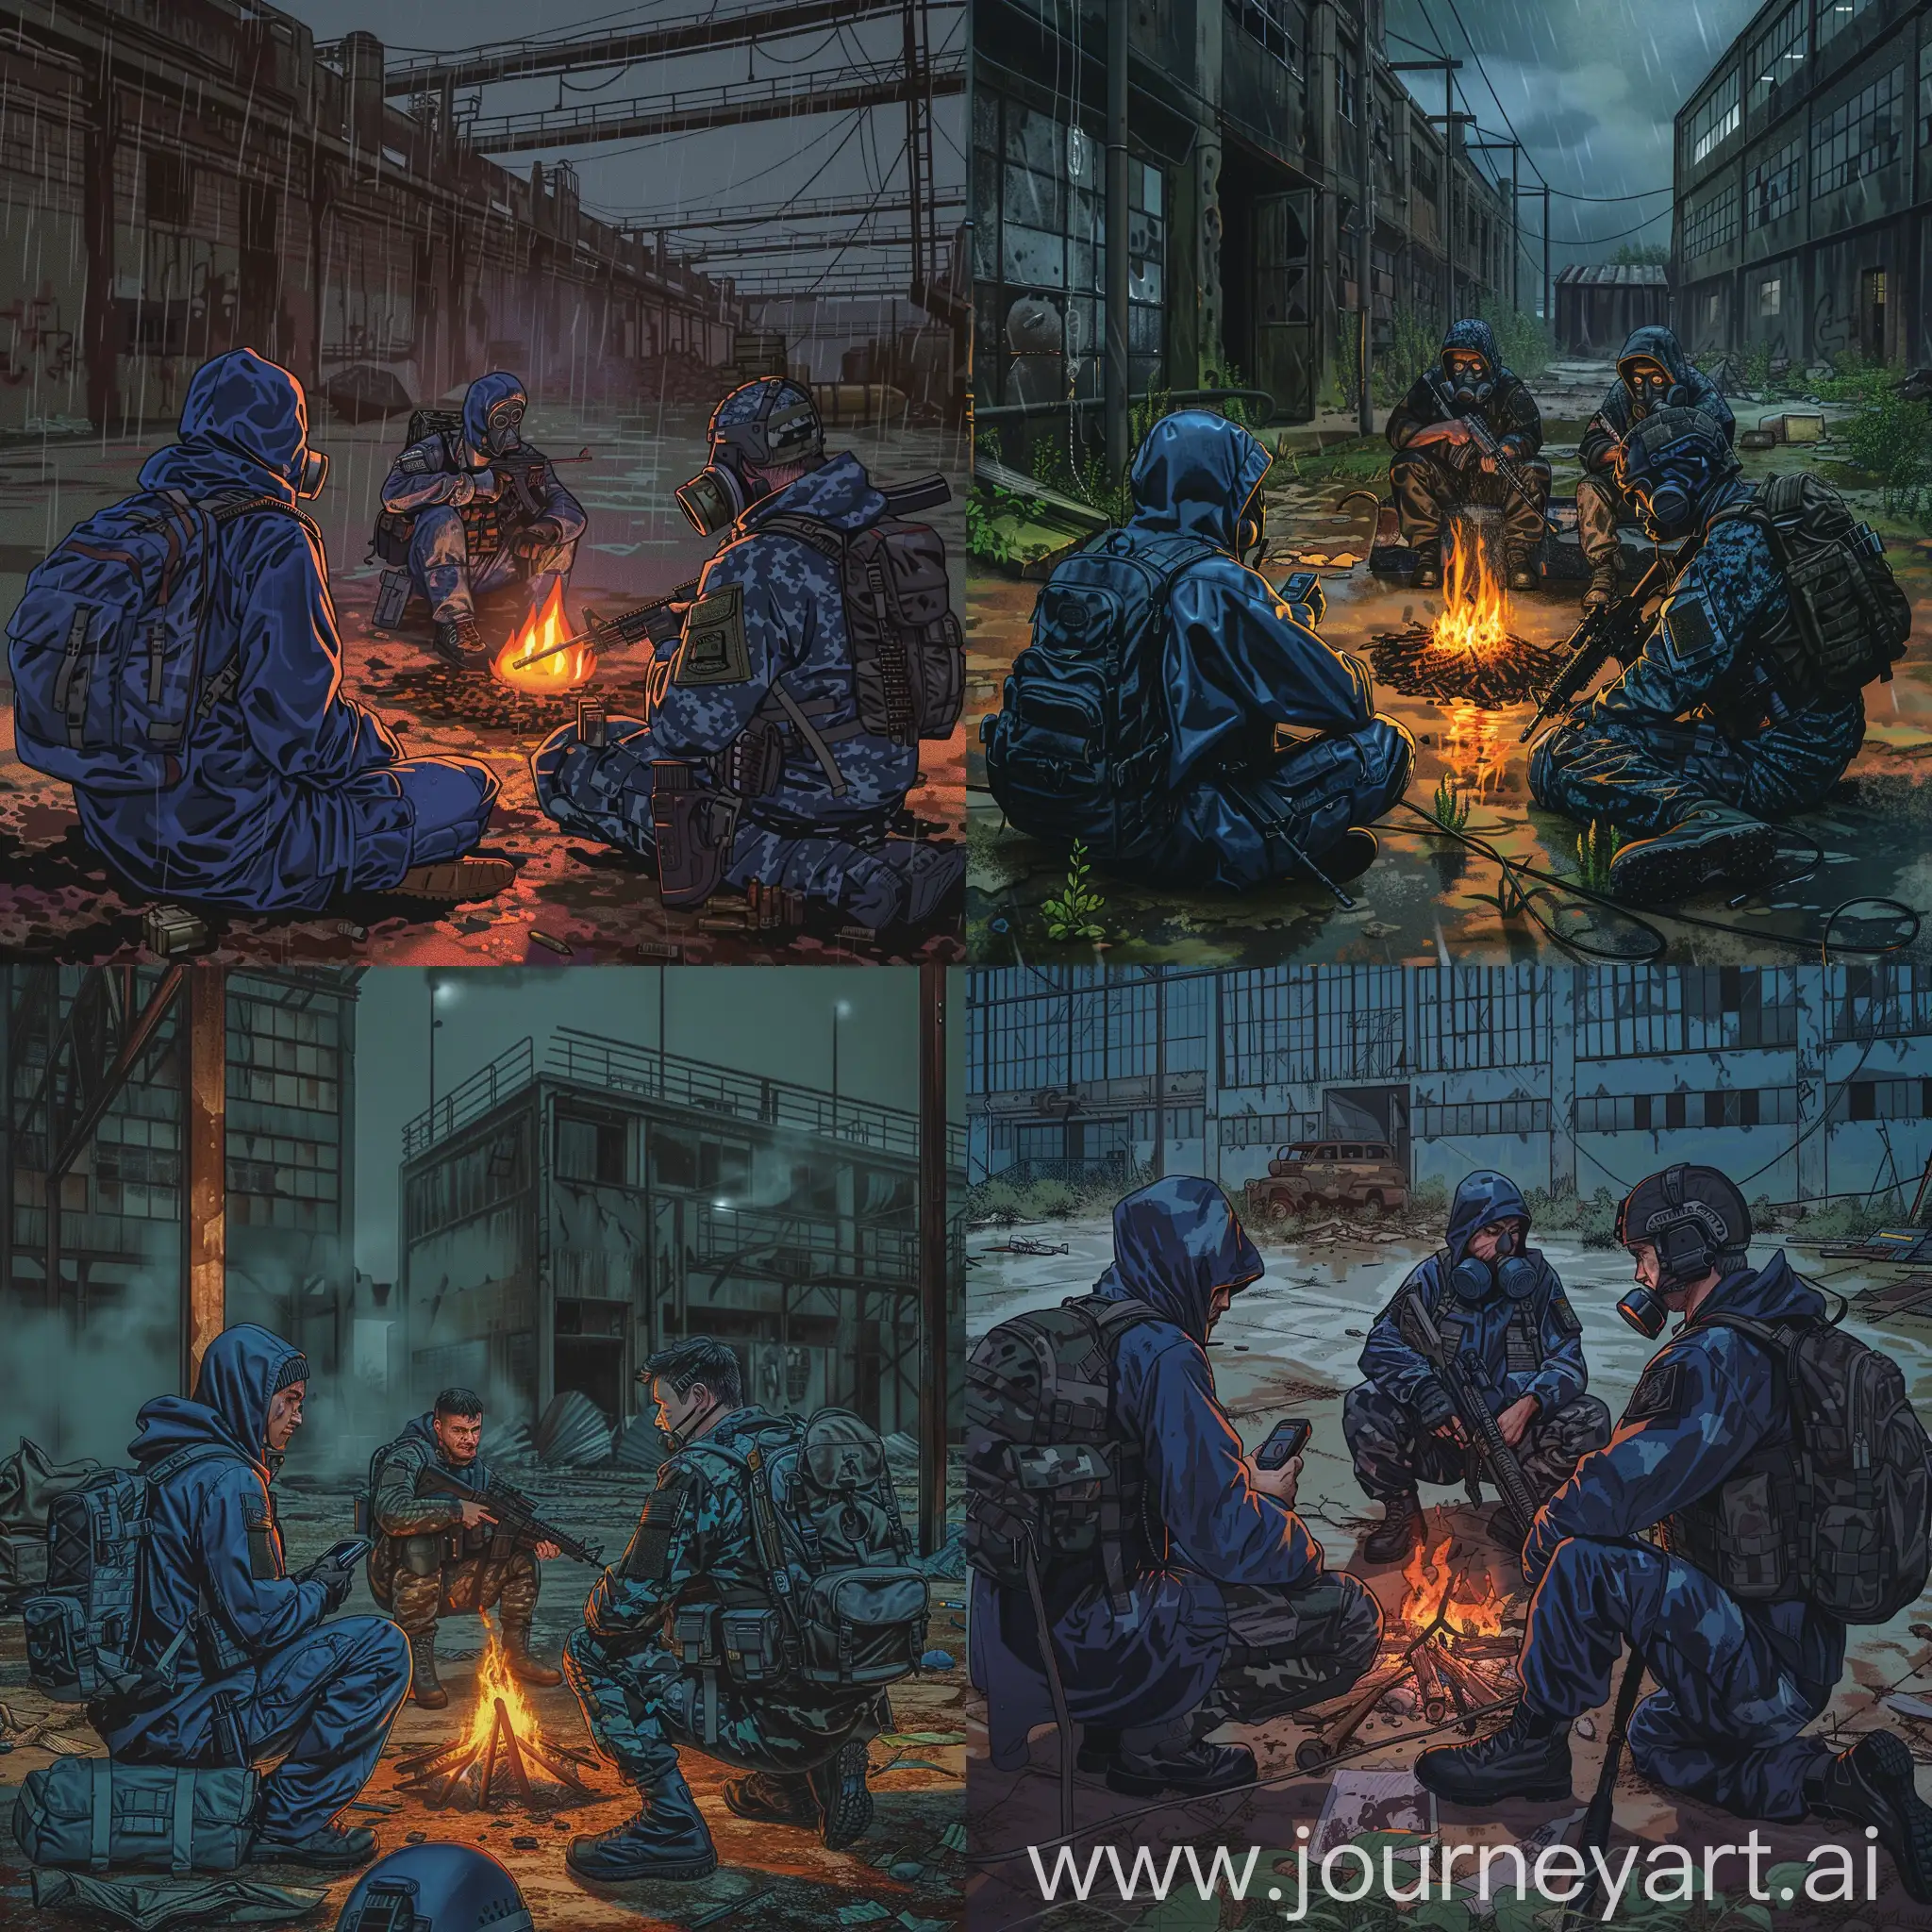 Mercenaries-in-Abandoned-Pripyat-Factory-Raincoats-Respirators-and-Rifles